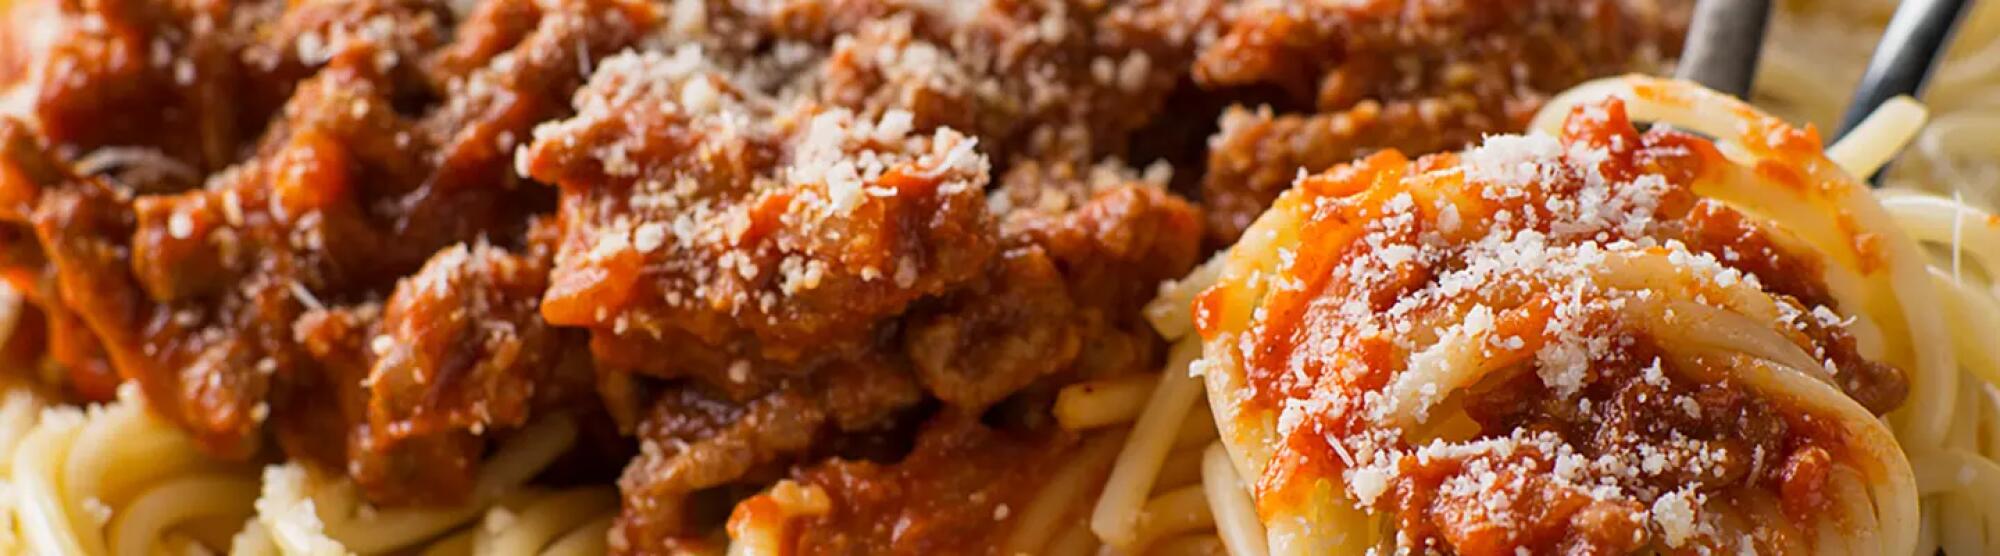 LA02_spaghetti-bolognaise-giovanni-ferrari